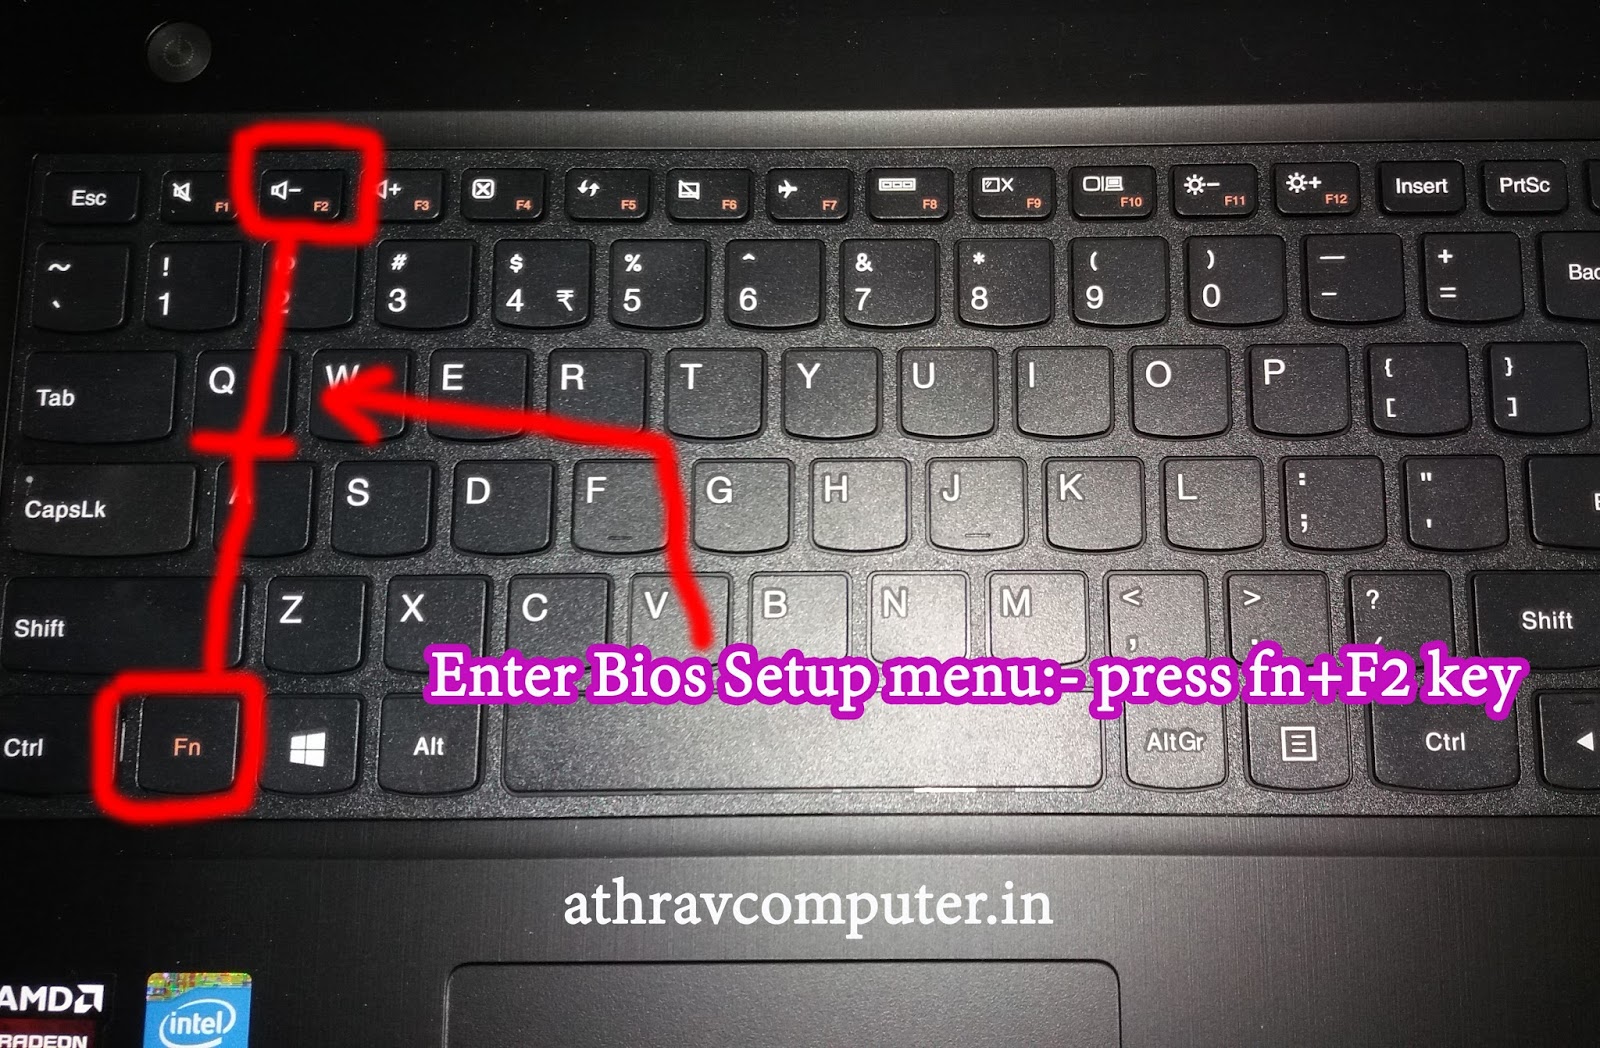 Нажать клавишу insert. Клавиша Insert на ноутбуке Acer. Клавиша Insert на клавиатуре ноутбука Acer. Кнопка Insert на клавиатуре. Кнопка Insert на клавиатуре ноутбука.